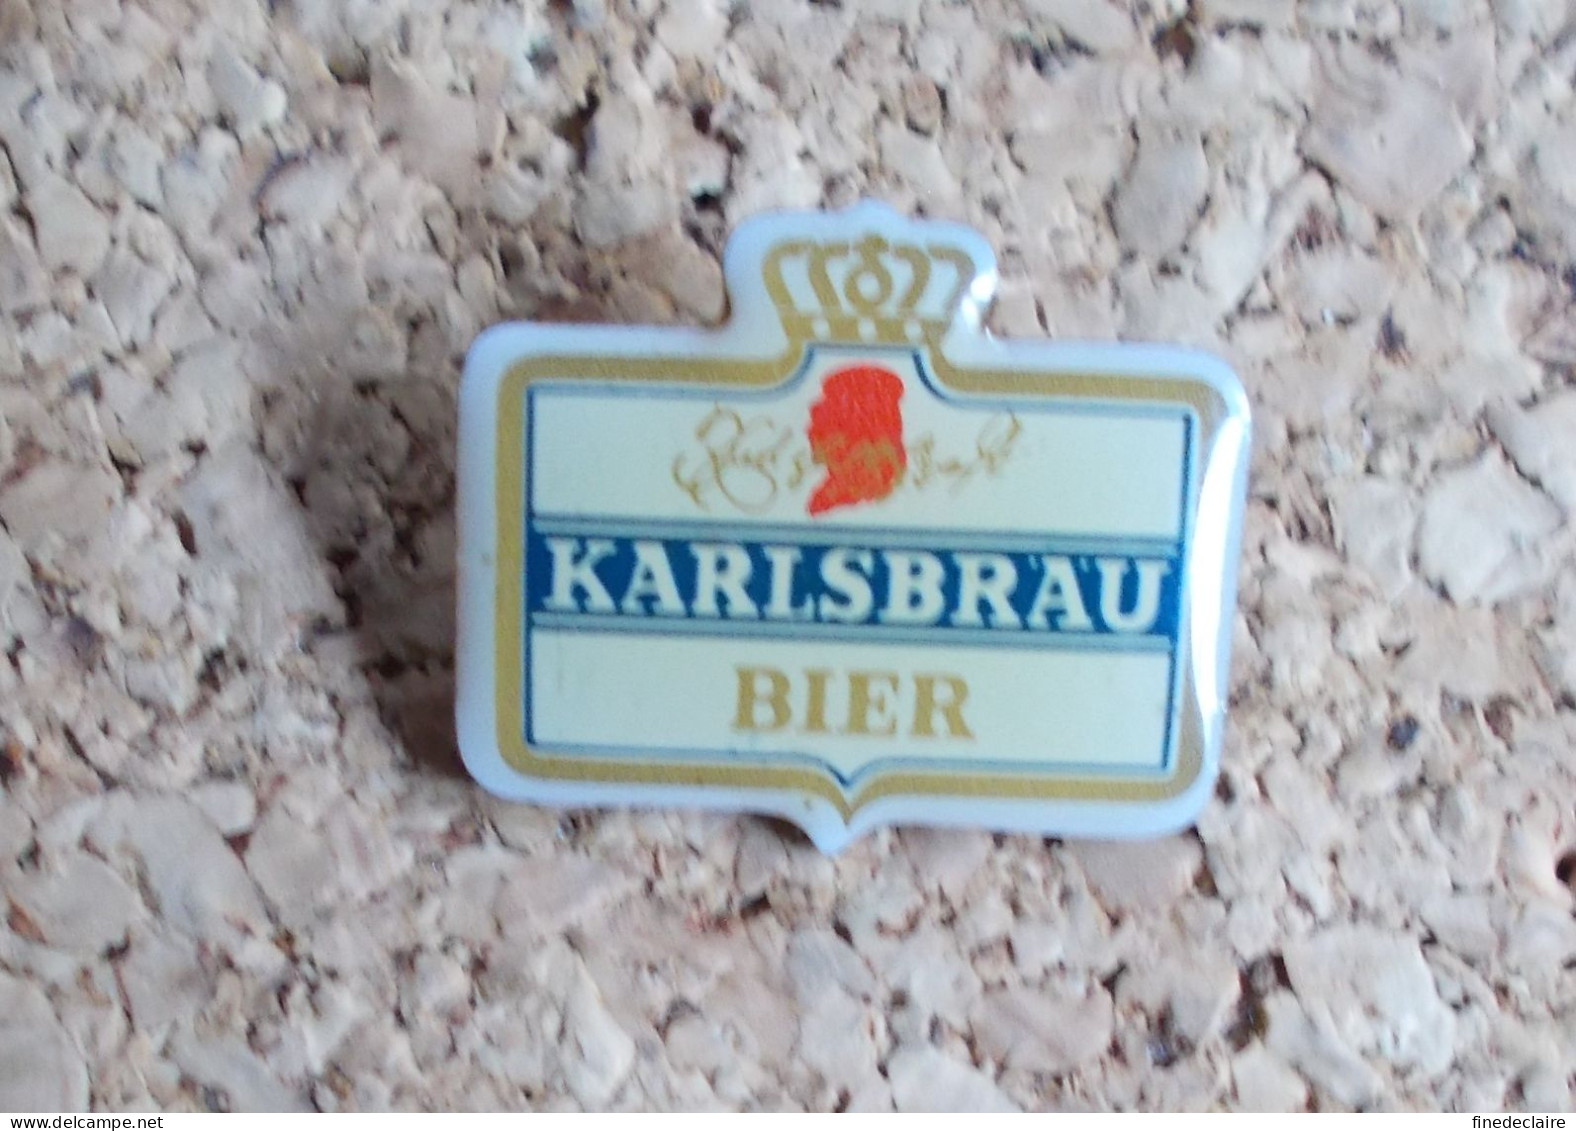 Pin's - Bière Bier Karlsbrau - Bier